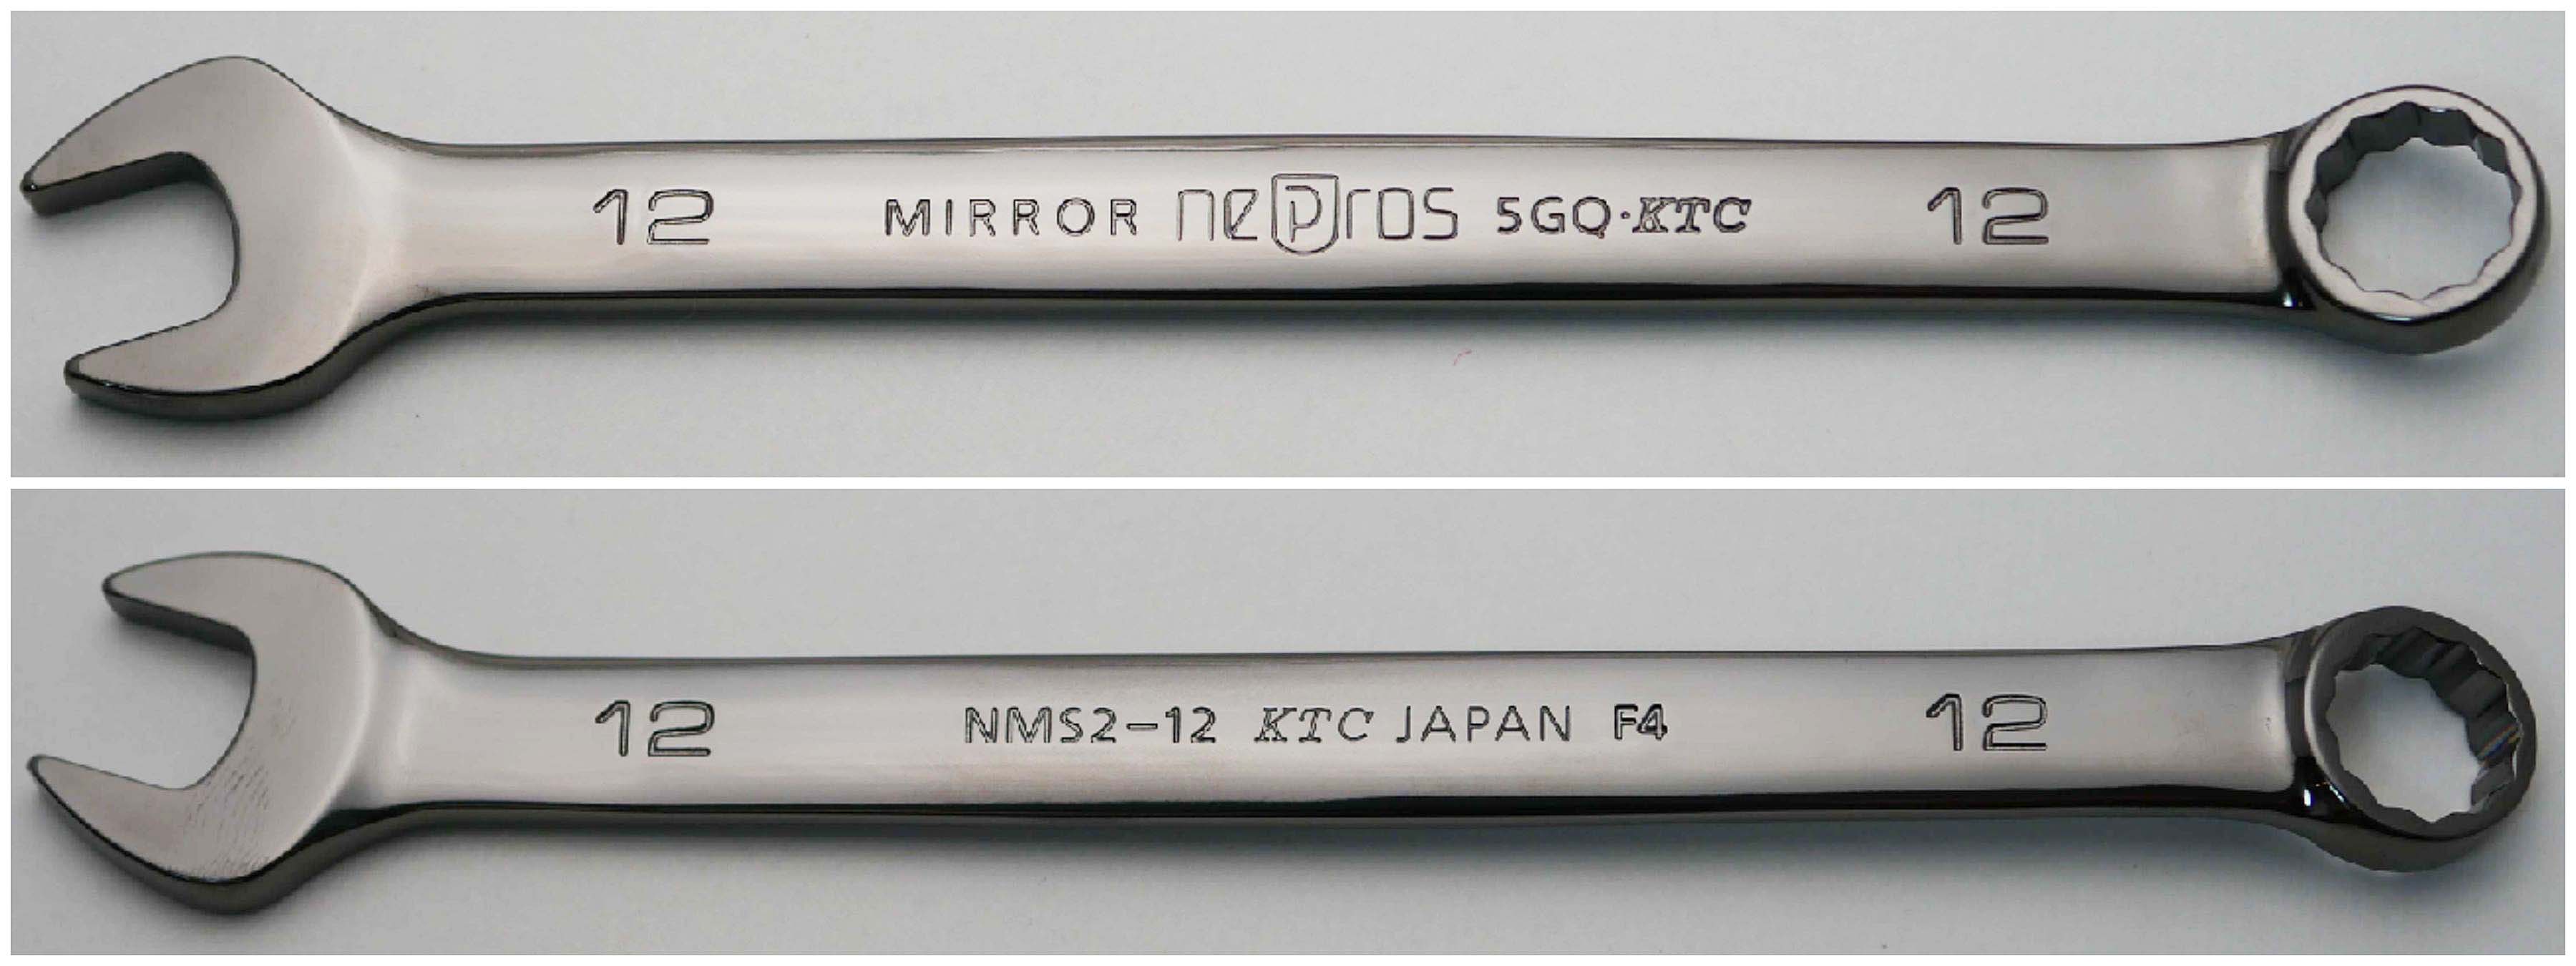 京都機械工具(KTC) コンビネーションレンチ31mm MS 安い販売中